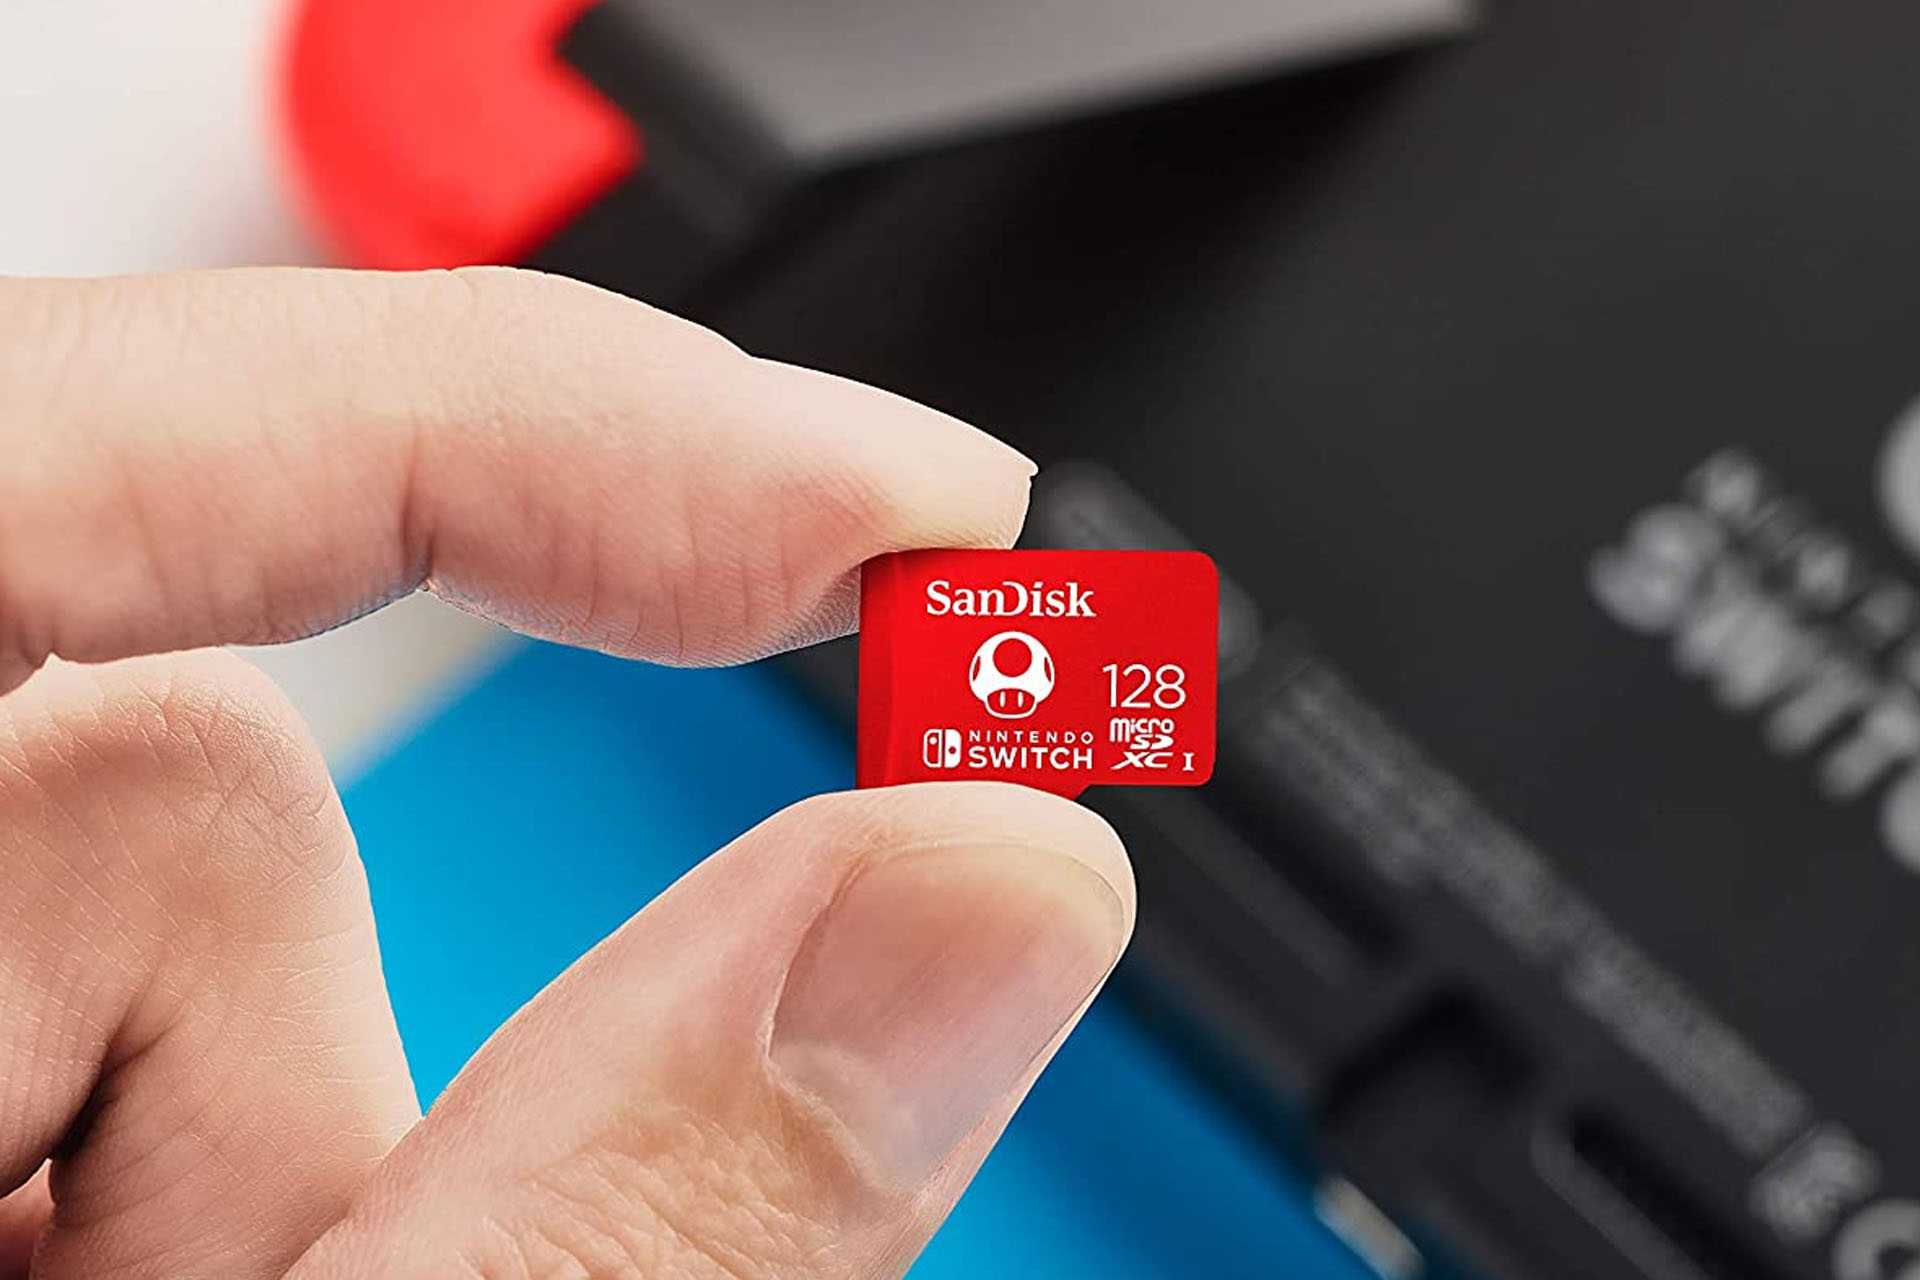 Снимок пользователя, держащего карту Nintendo Micro SD перед своей консолью Switch.